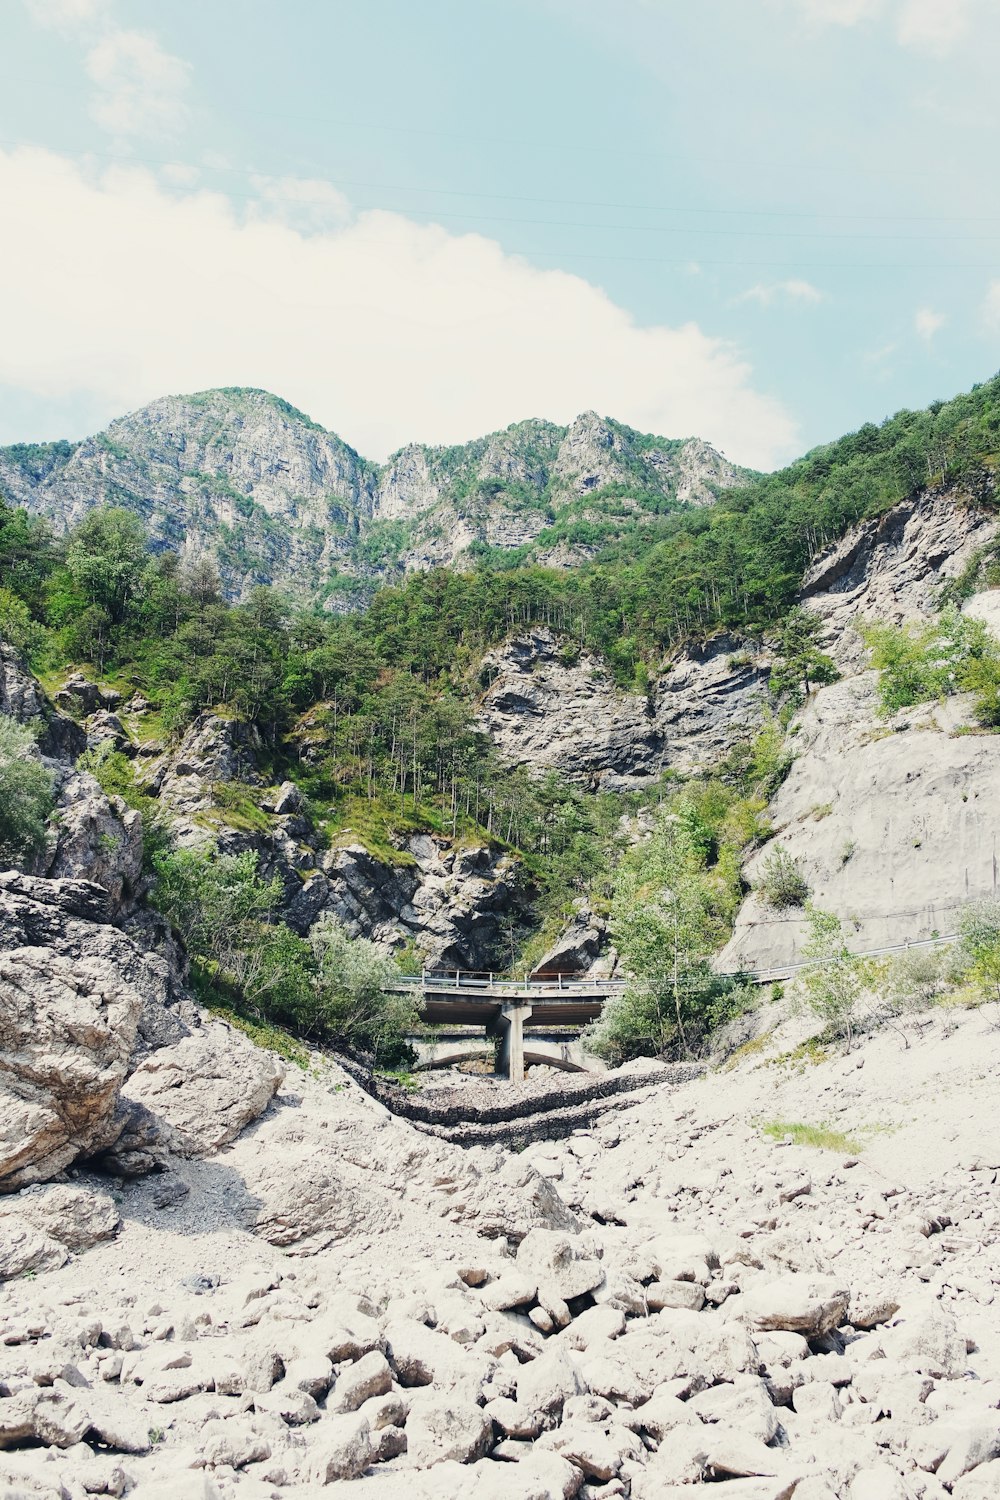 a bridge over a rocky mountain